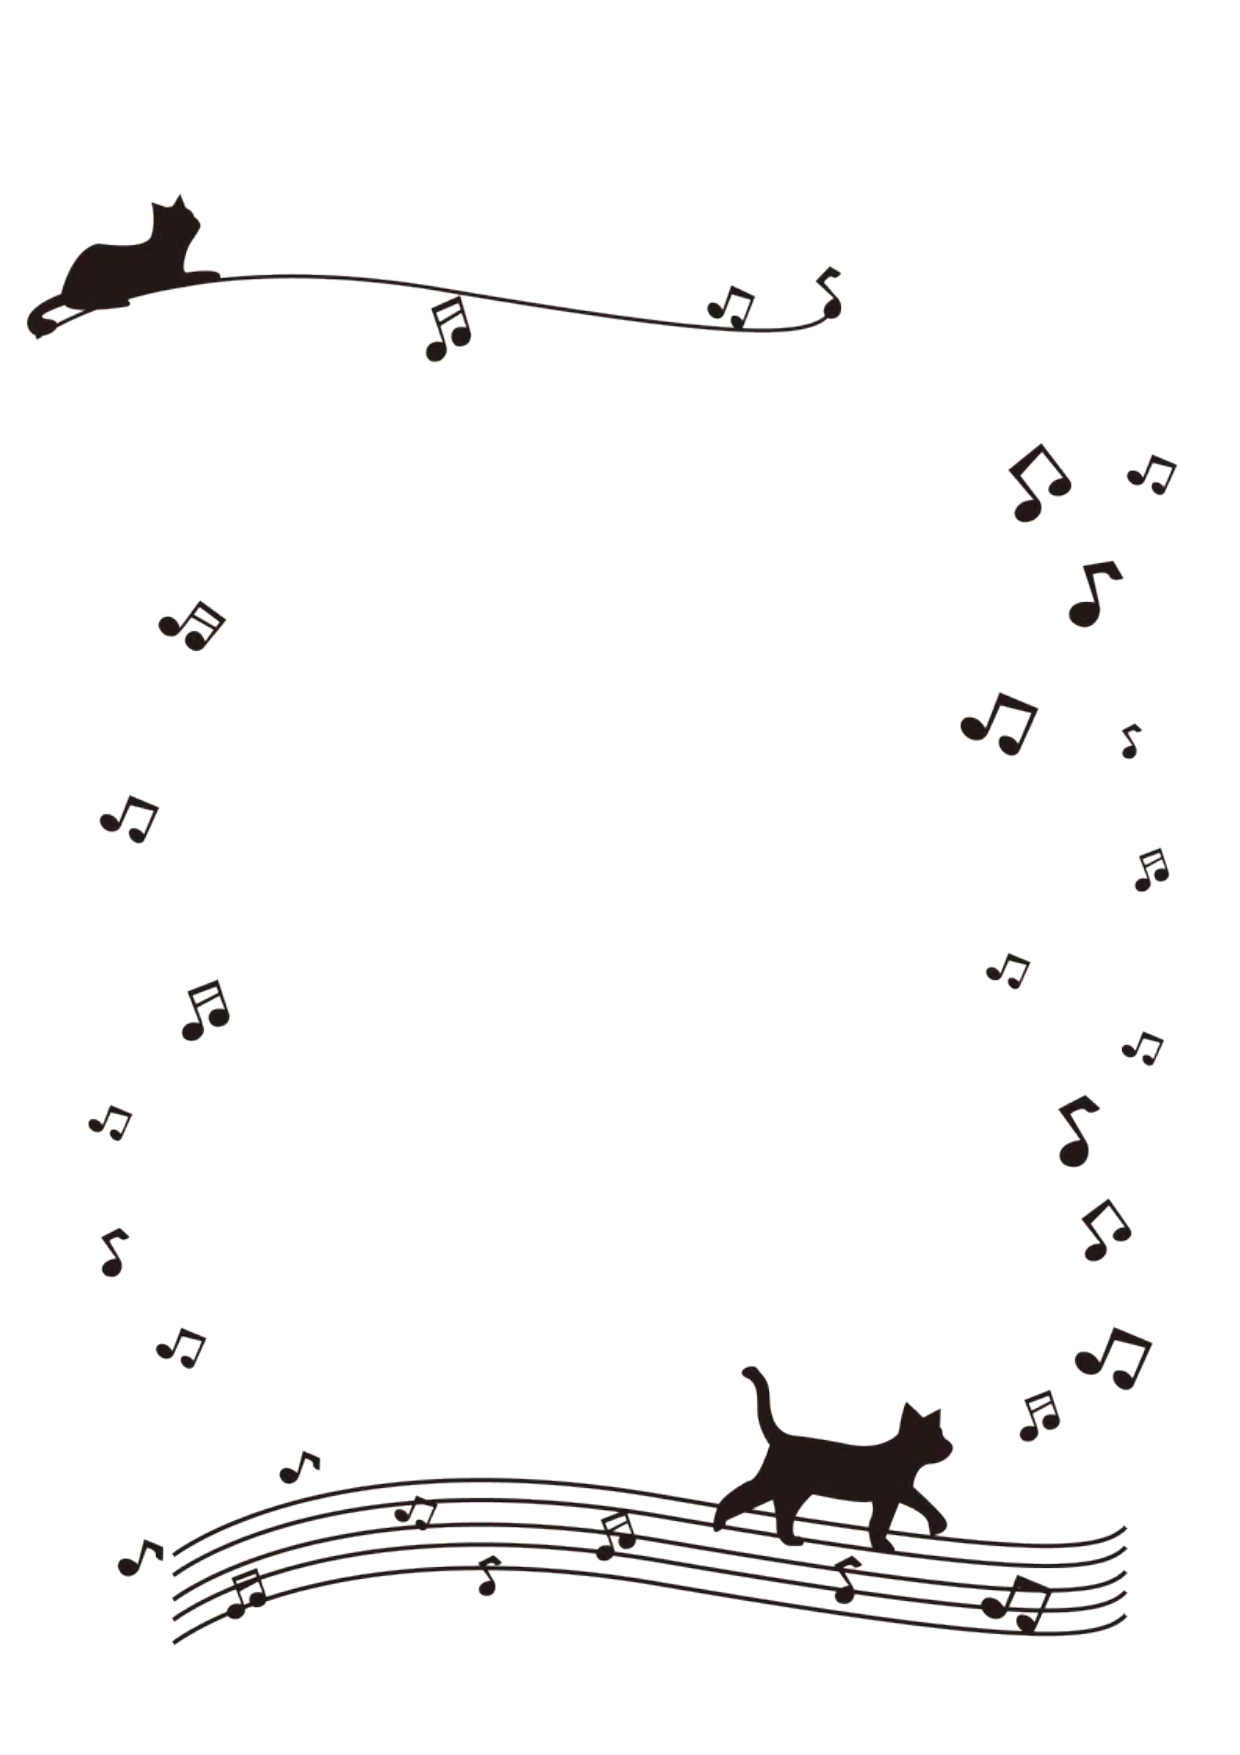 書類送付状＆FAX送付状の楽器・音楽教室（音符が踊る五線譜の上の猫）かわいいイラストフレーム・お知らせや案内に使える素材となり、ダウンロード後に利用可能です。黒猫がタイトル部分と下部に五線譜が描かれております。音楽系の発表会やお知らせに利用